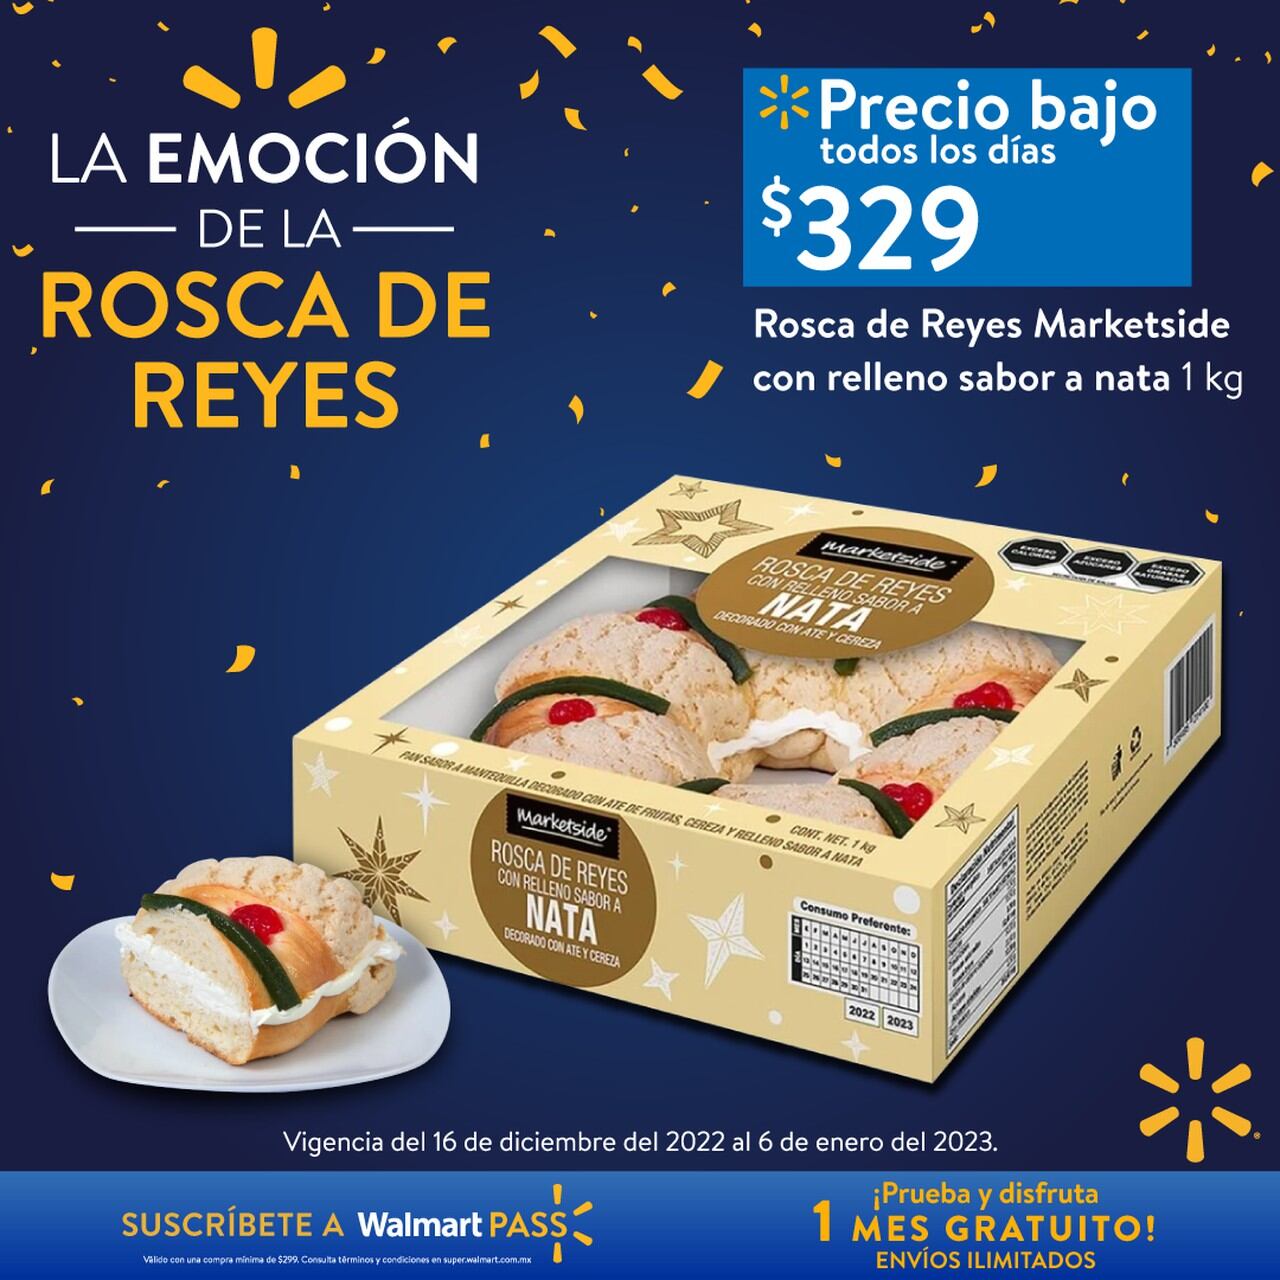 Rosca de Reyes precios 2023 El Globo, Walmart o Soriana, ¿cuál te